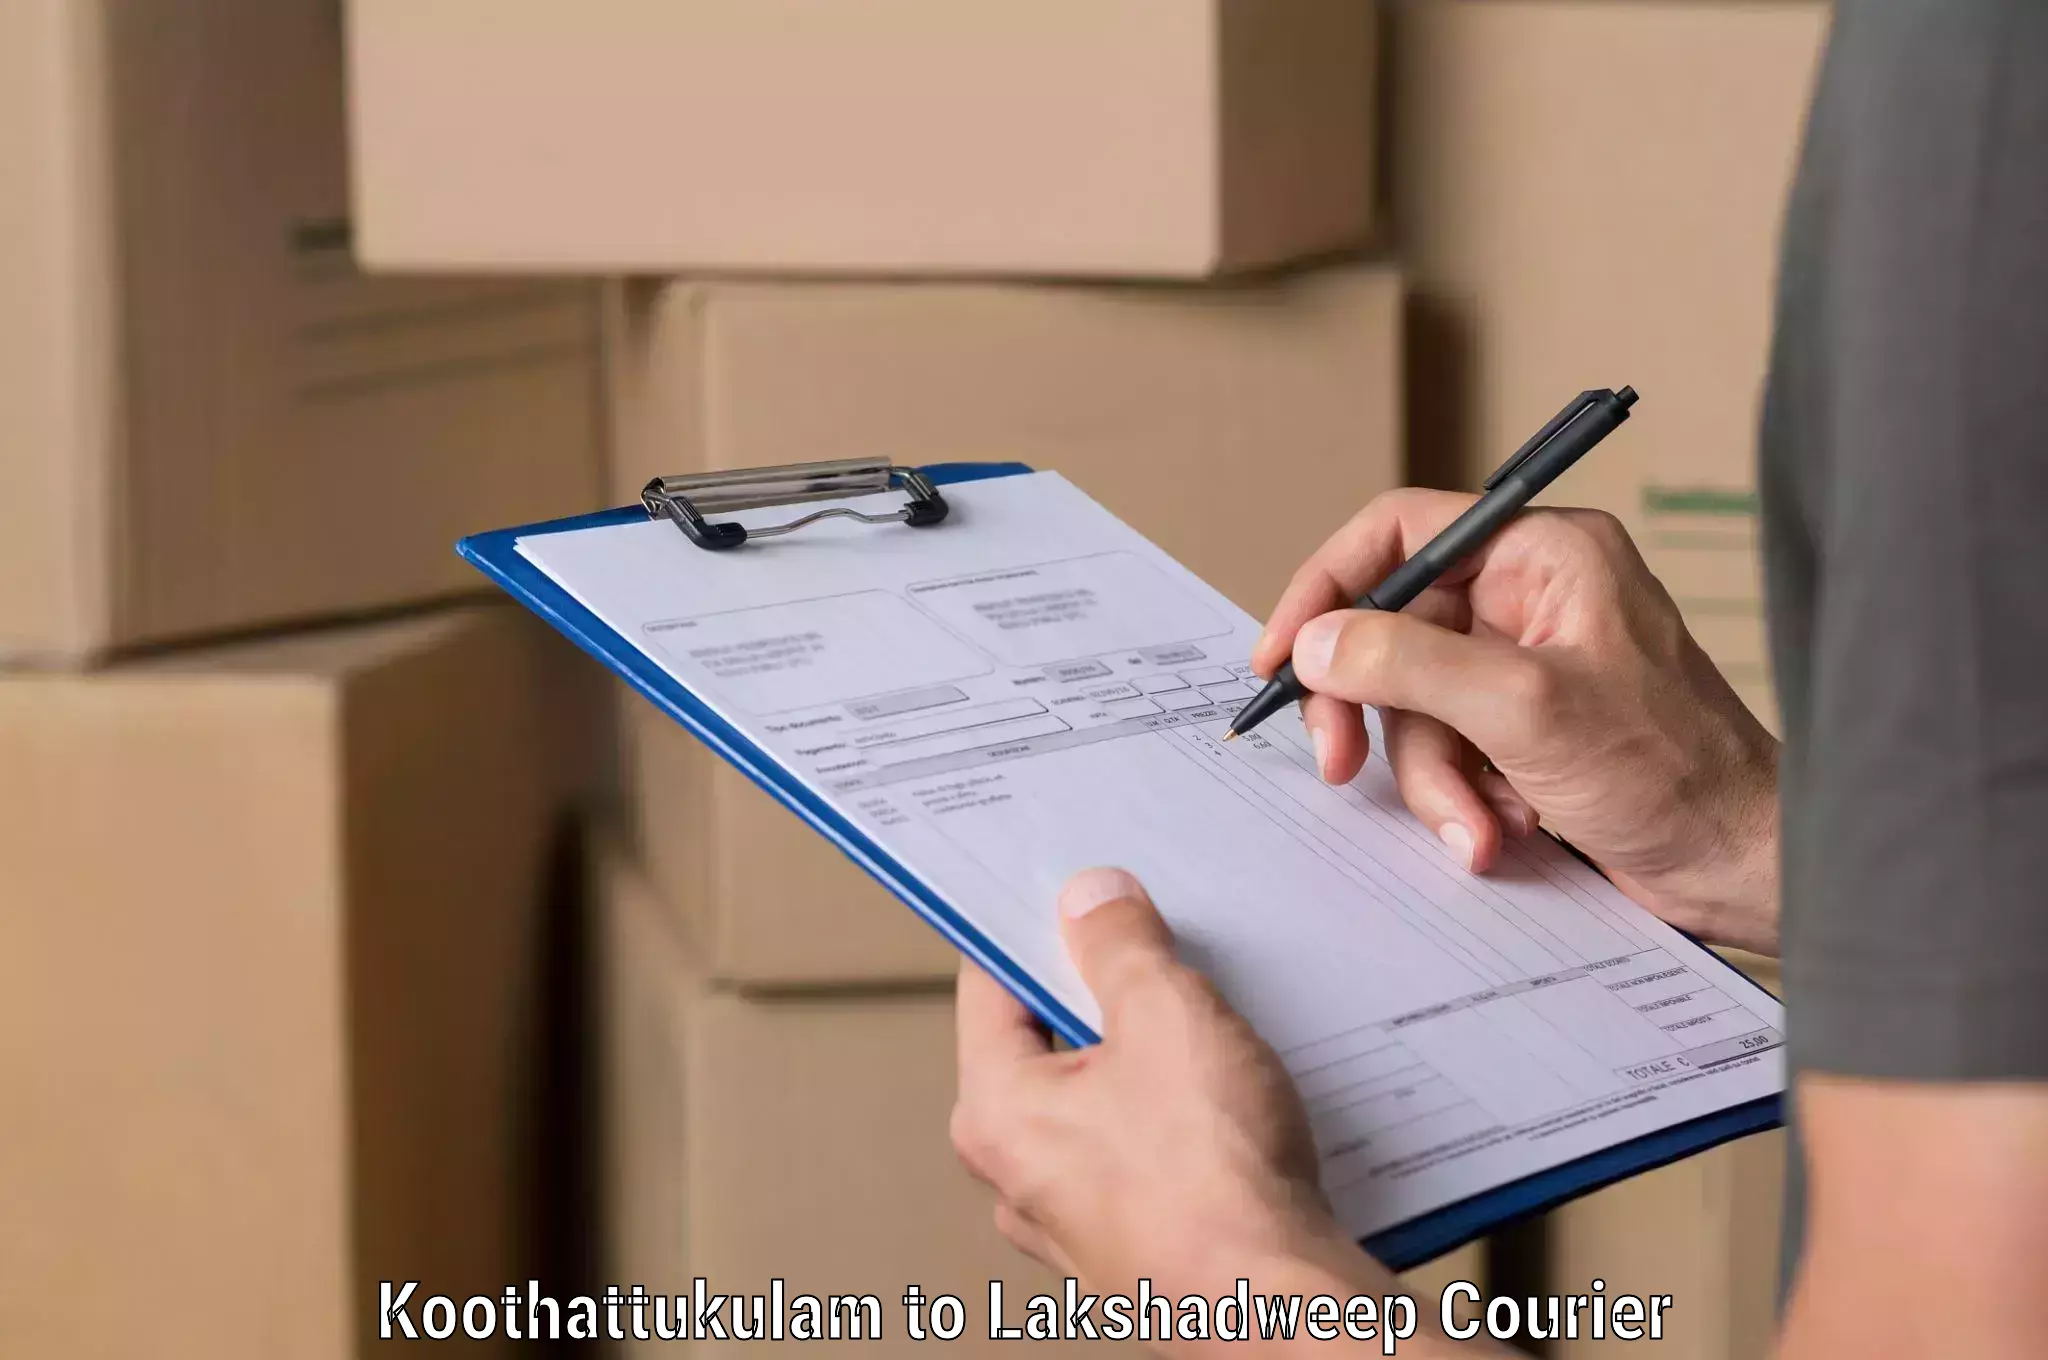 User-friendly courier app Koothattukulam to Lakshadweep